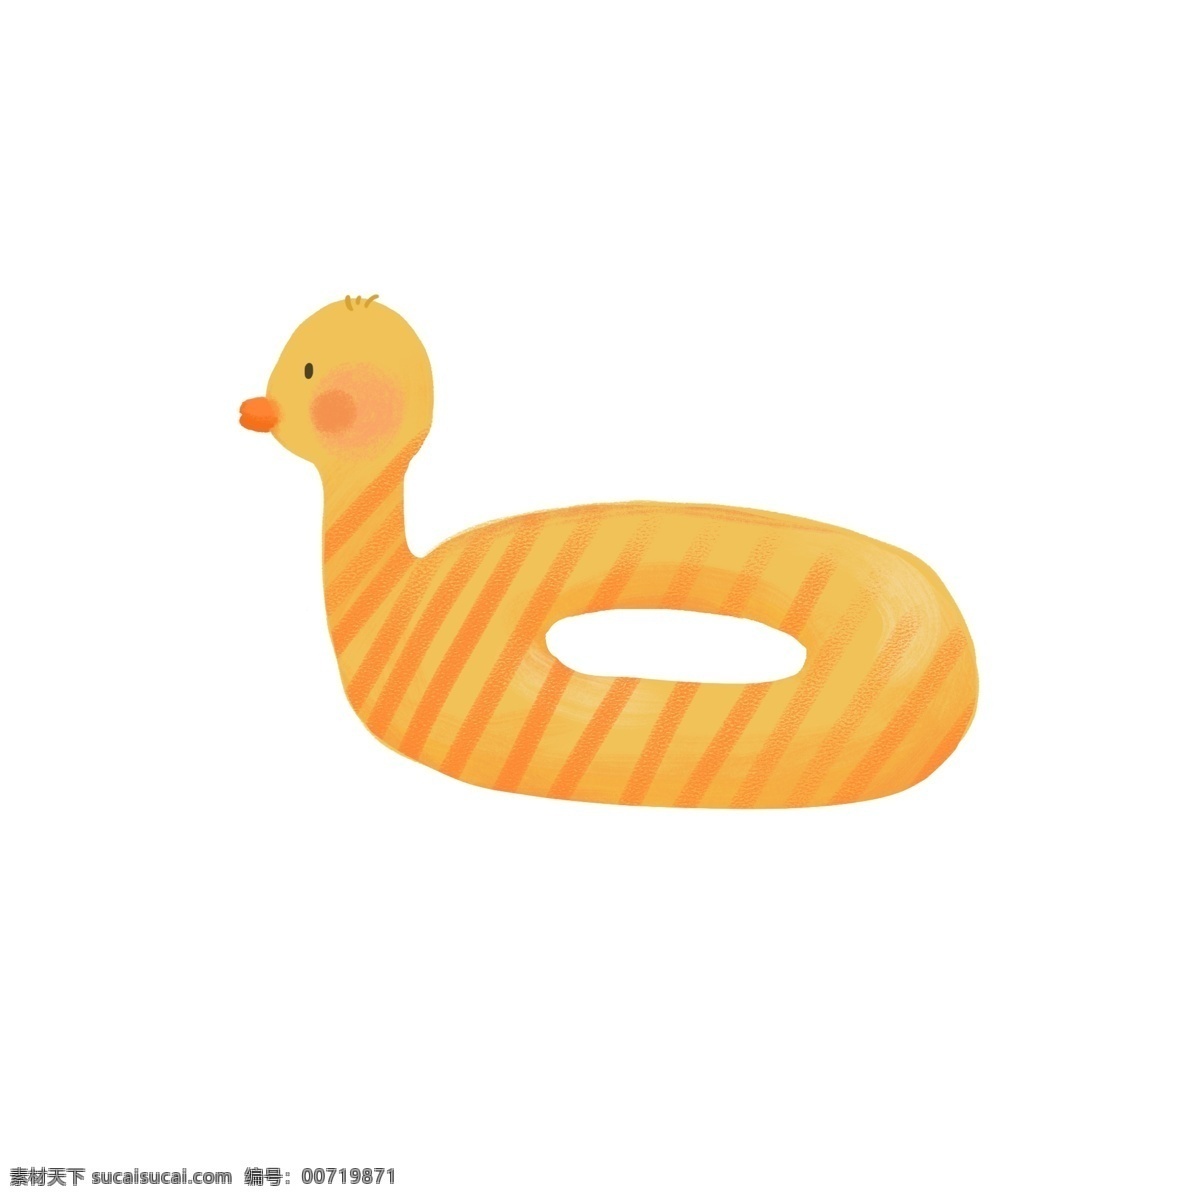 黄色 小鸭 游泳 圈 救生圈 游泳圈 可爱 卡通